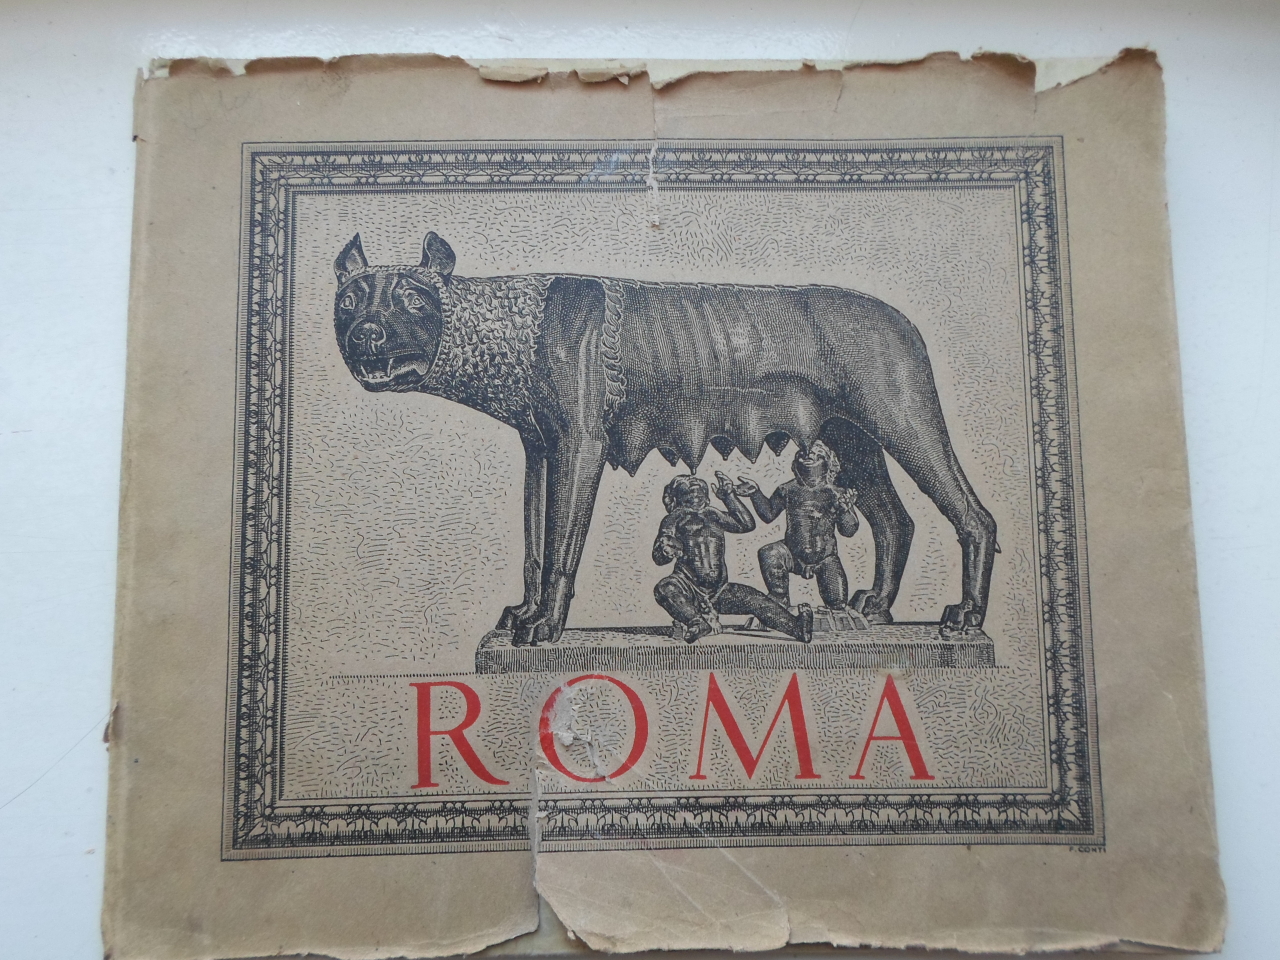 Ալբոմ՝ Հռոմի տեսարժան վայրերի նկարների